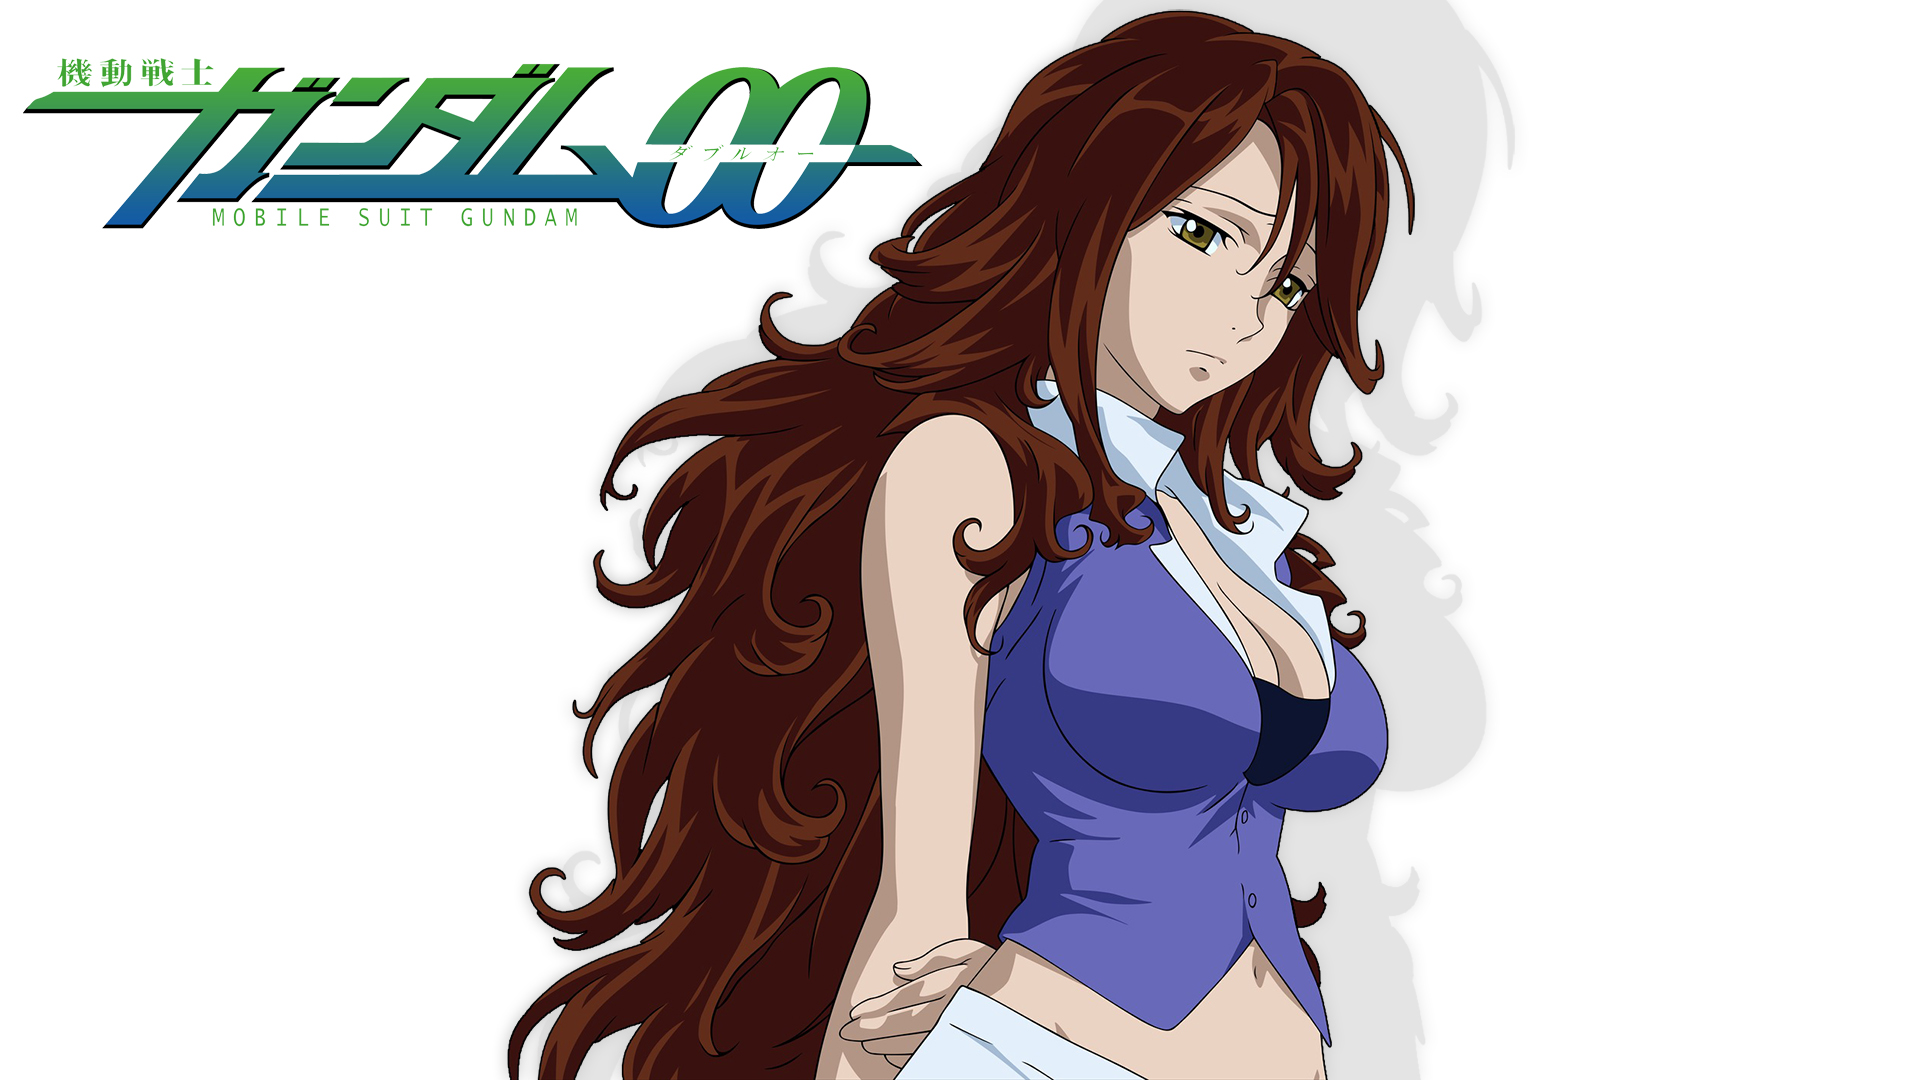 Bakgrunnsbilder Mobile Suit Gundam Anime ung kvinne Unge kvinner